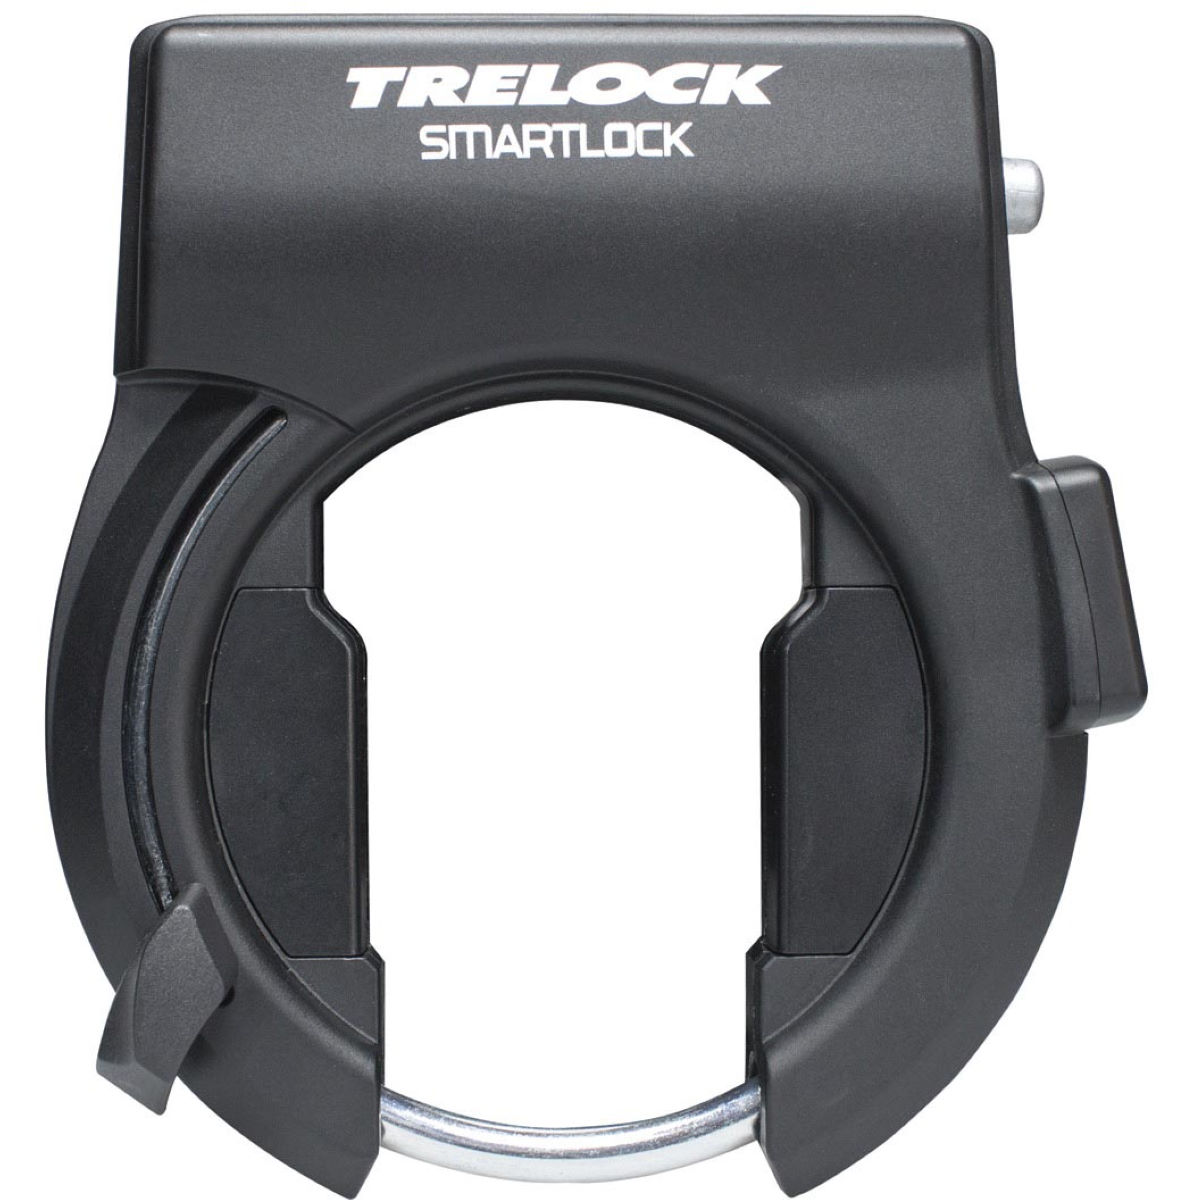 Candado de cuadro Trelock Smartlock SL 460 (con llave electrónica) - Kits de seguridad